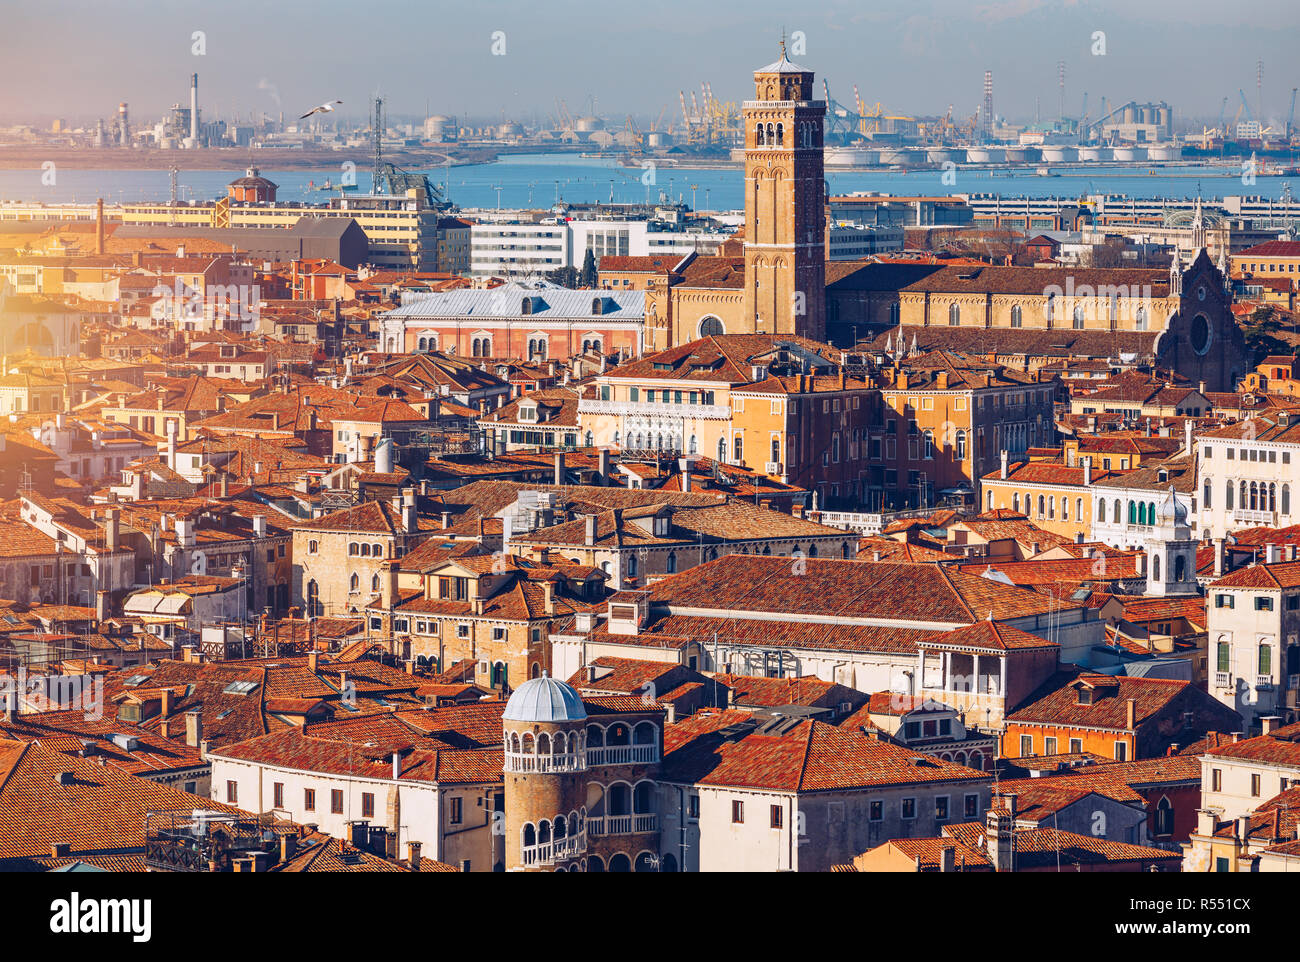 Vue aérienne vue panoramique de Venise avec des toits rouges, Veneto, Italie. Vue aérienne de la ville de Venise, Italie. Venise est une destination touristique populaire de l'Europe. Banque D'Images